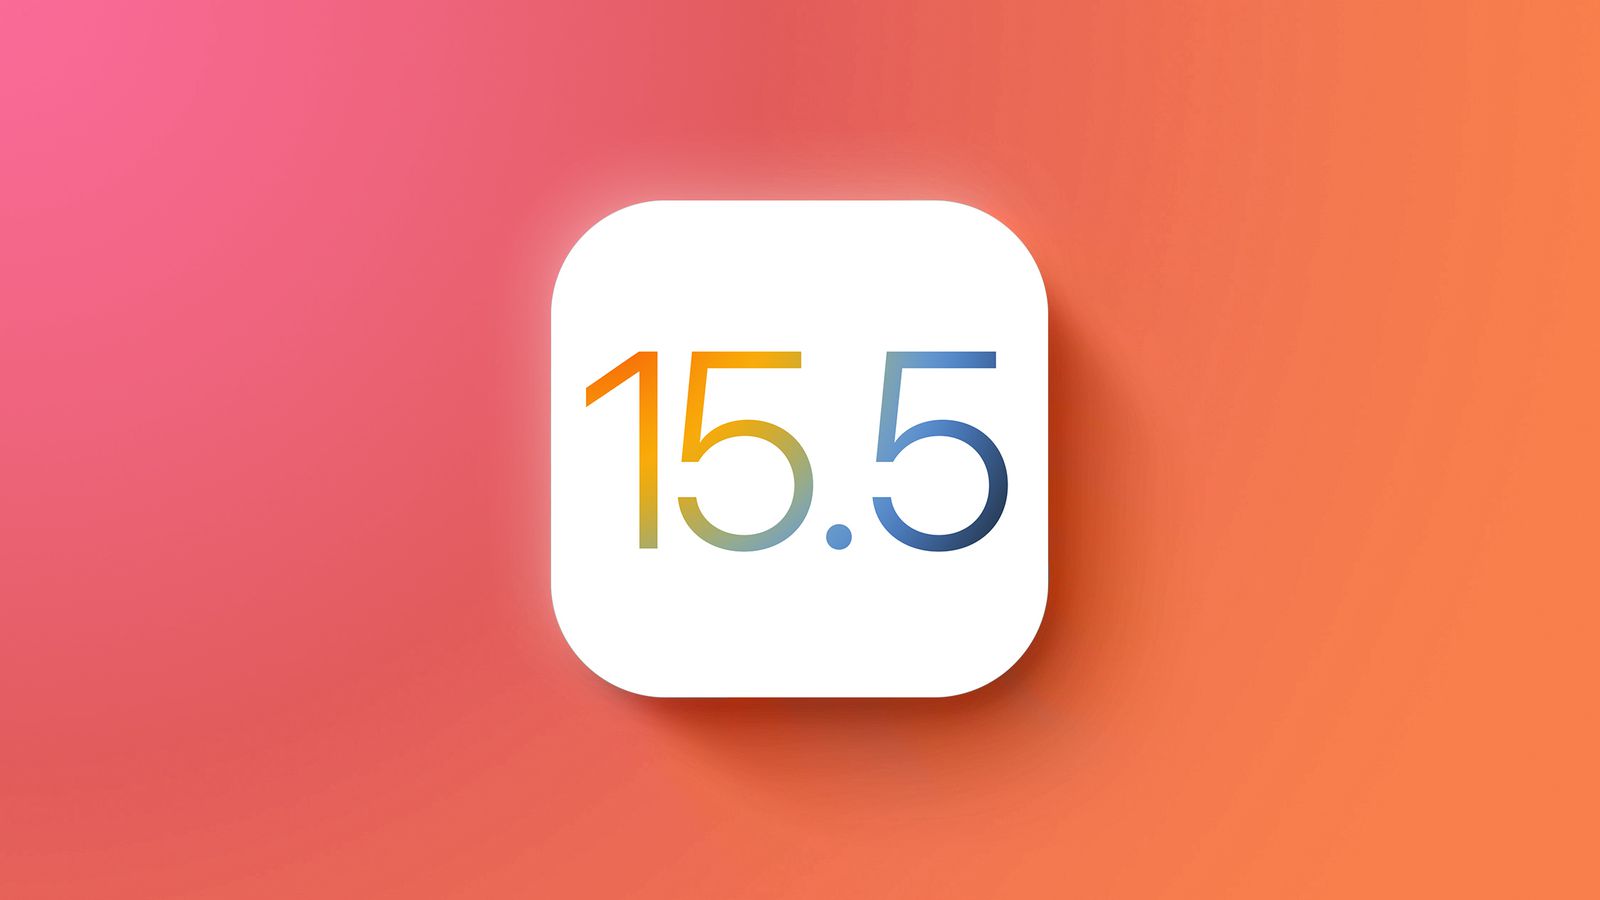 Apple ha rilasciato iOS 15.5: vi diciamo cosa c'è di nuovo e quando attendere il firmware